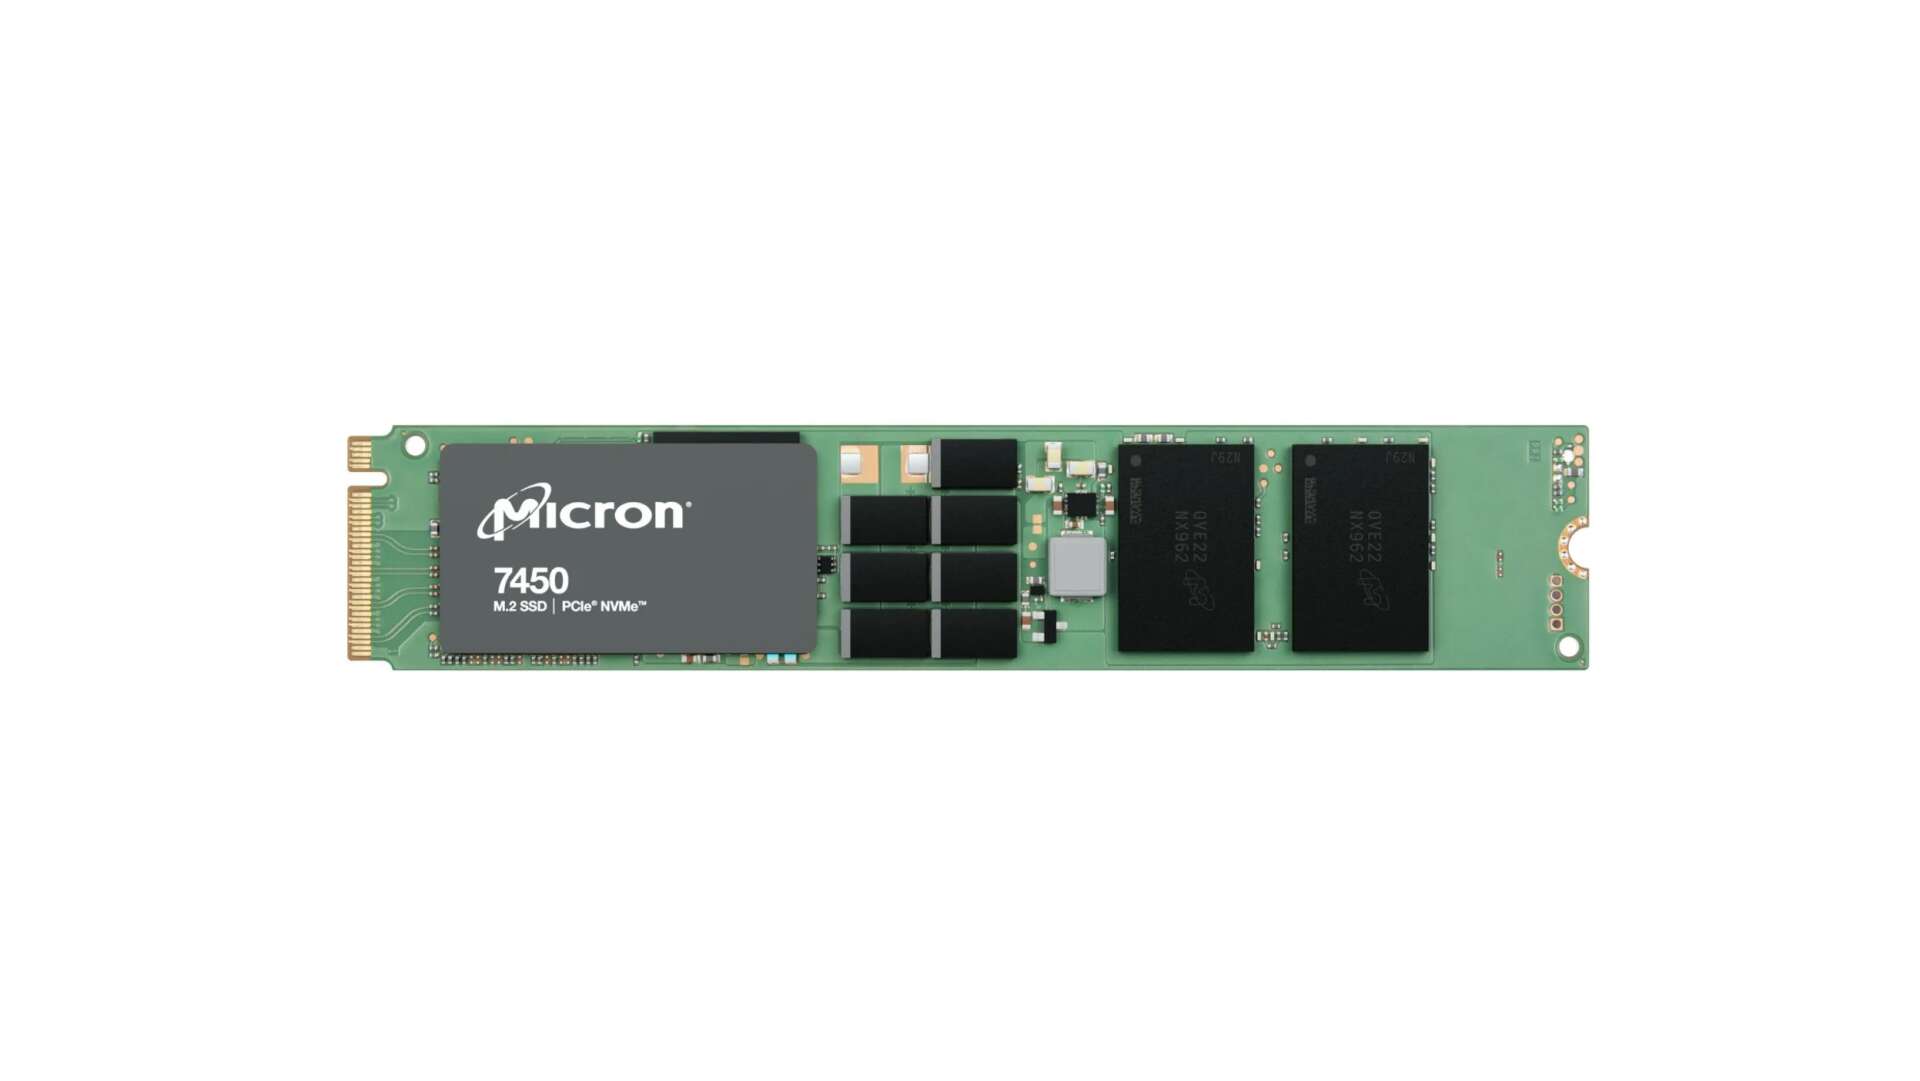 Micron 960gb 7450 pro m.2 pcie nvme ssd